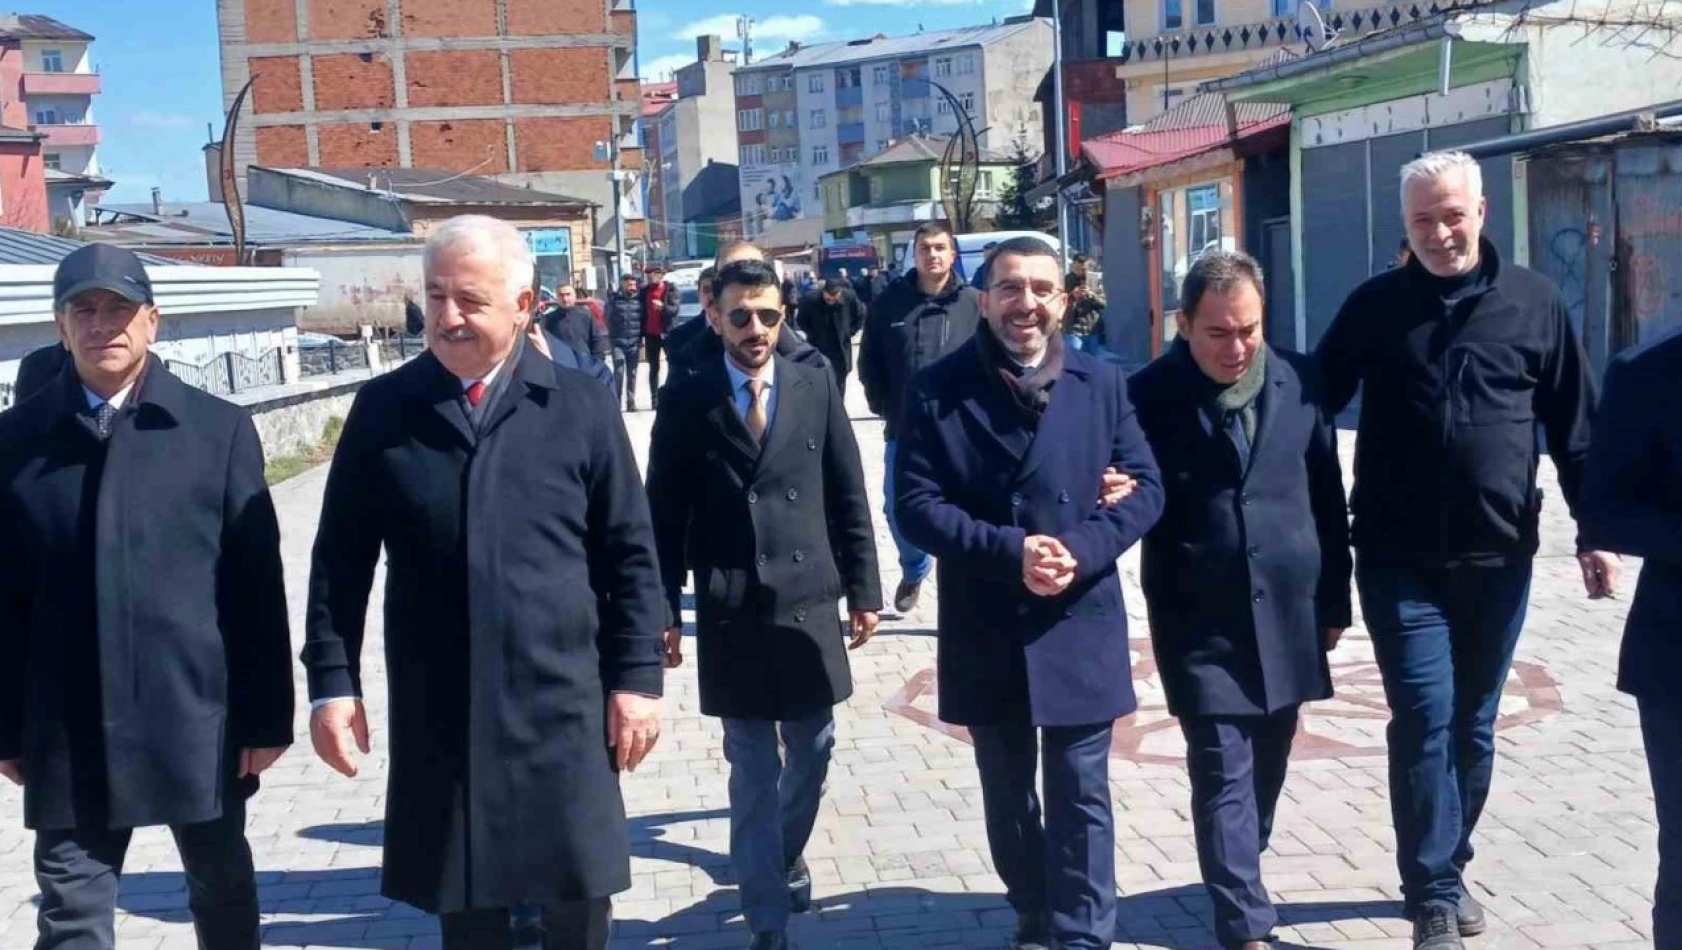 Kars'ta Cumhur İttifakı'nın seçim çalışmaları sürüyor